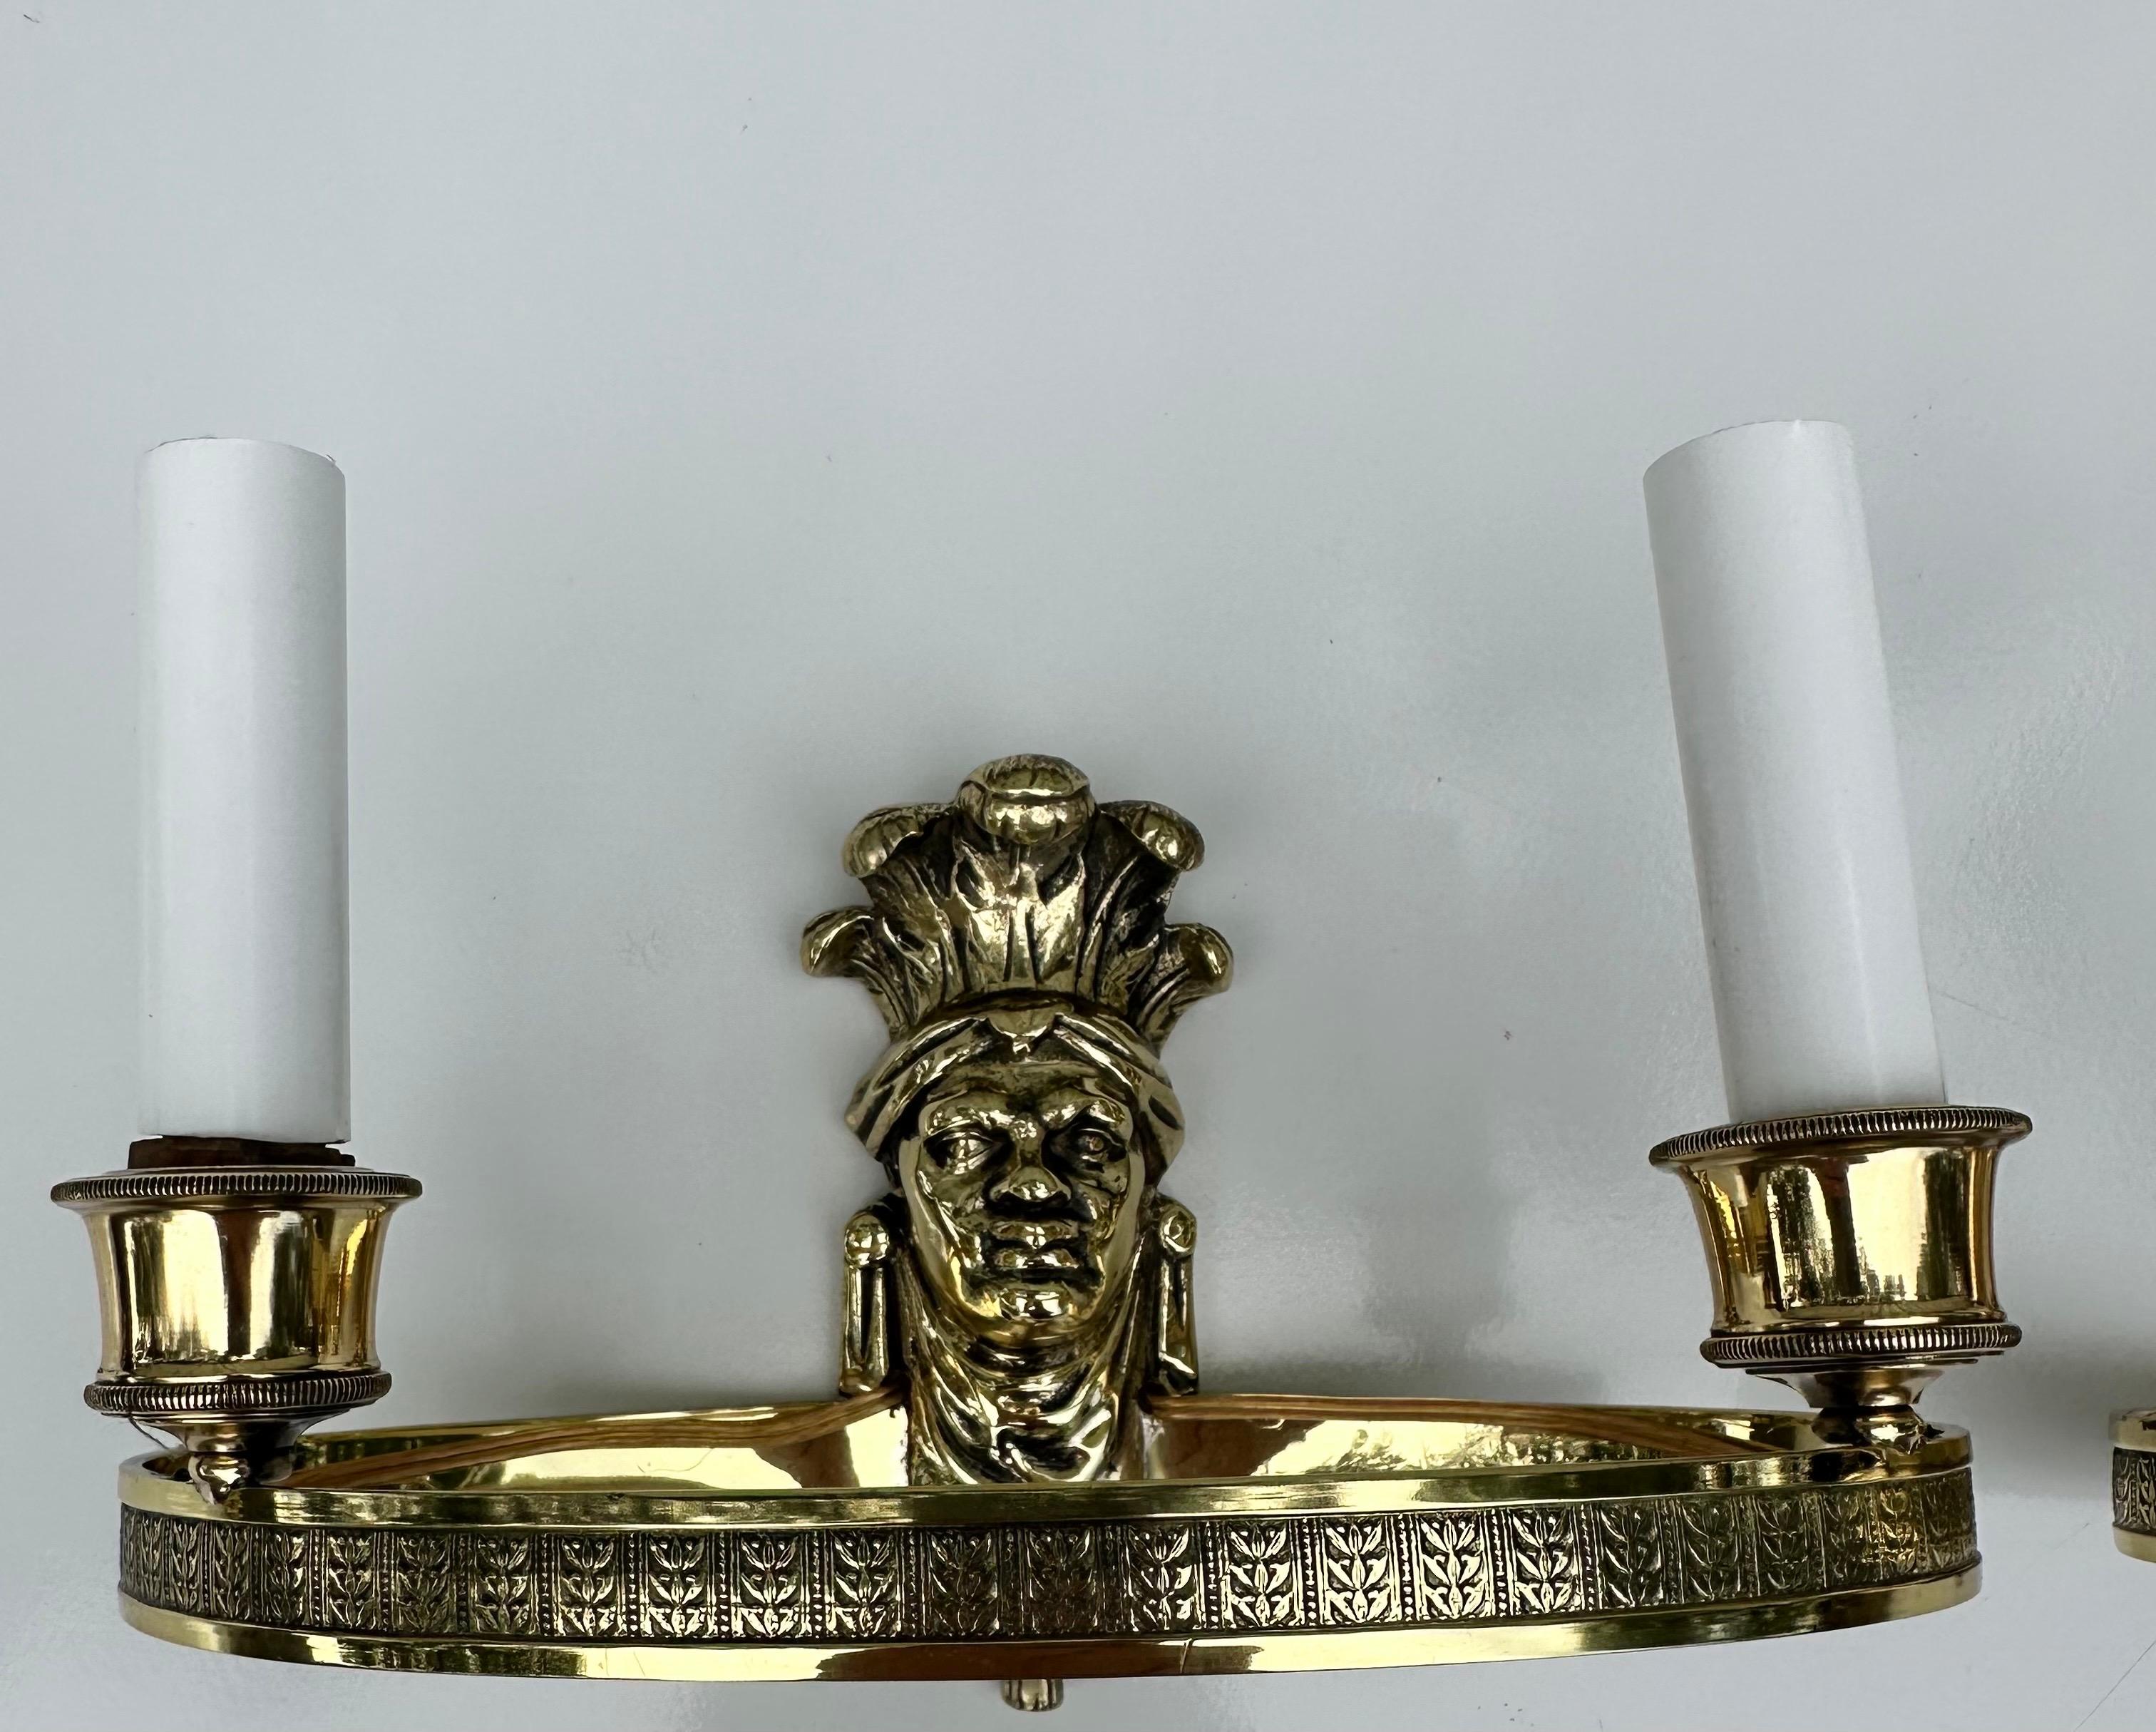 Paire d'appliques françaises en bronze de haute qualité de la Maison Maison.
US recâblé et en état de marche.
2 lampes, ampoule de 60 watts max.
2 paires disponibles.